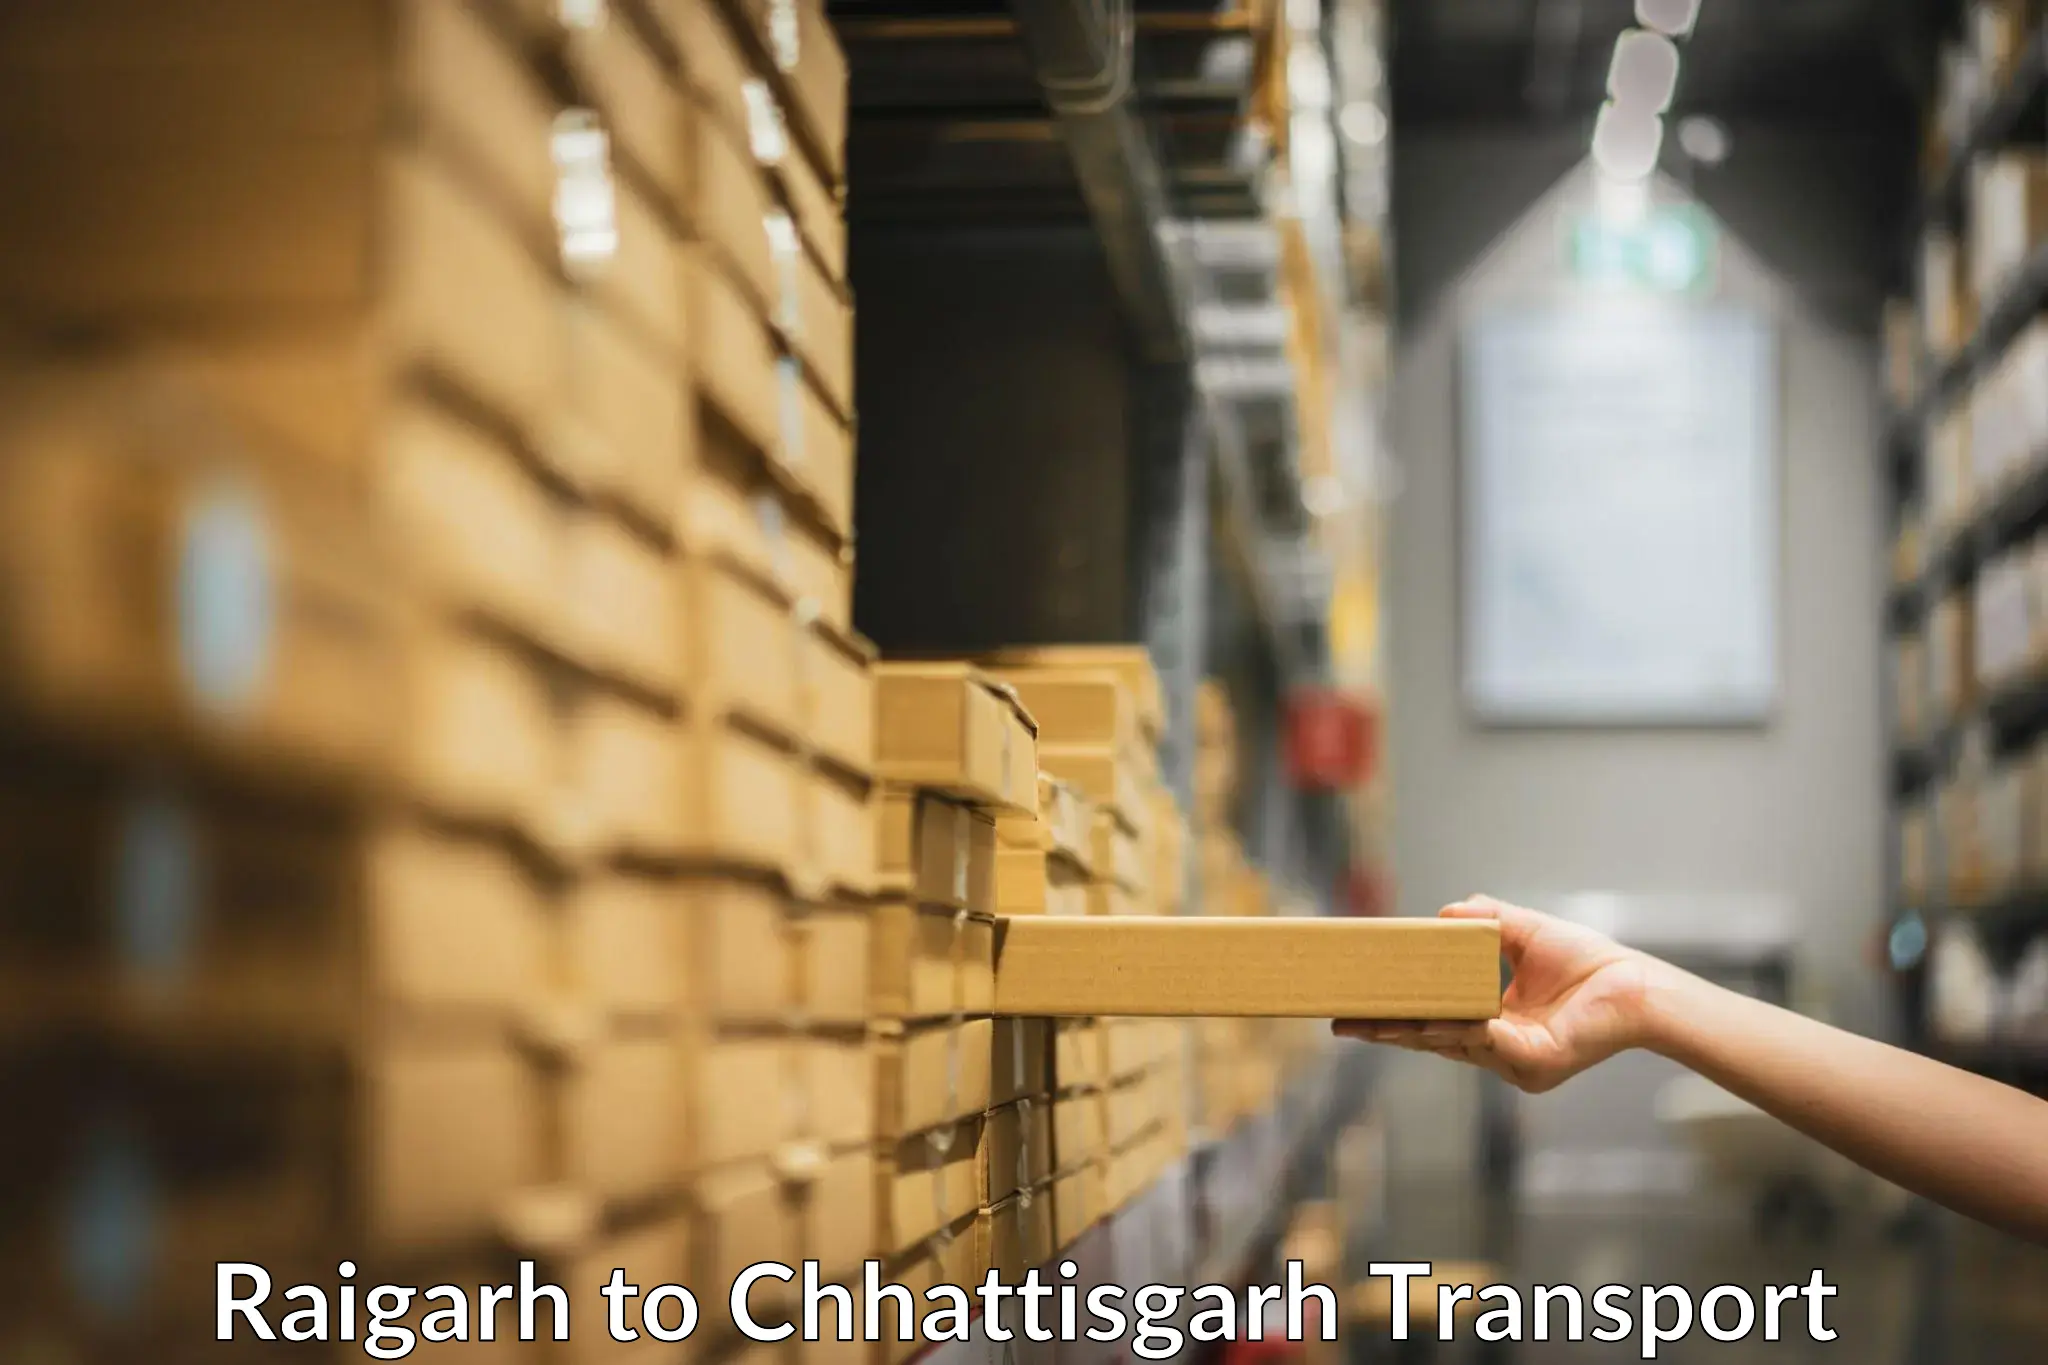 Domestic transport services Raigarh to Patna Chhattisgarh